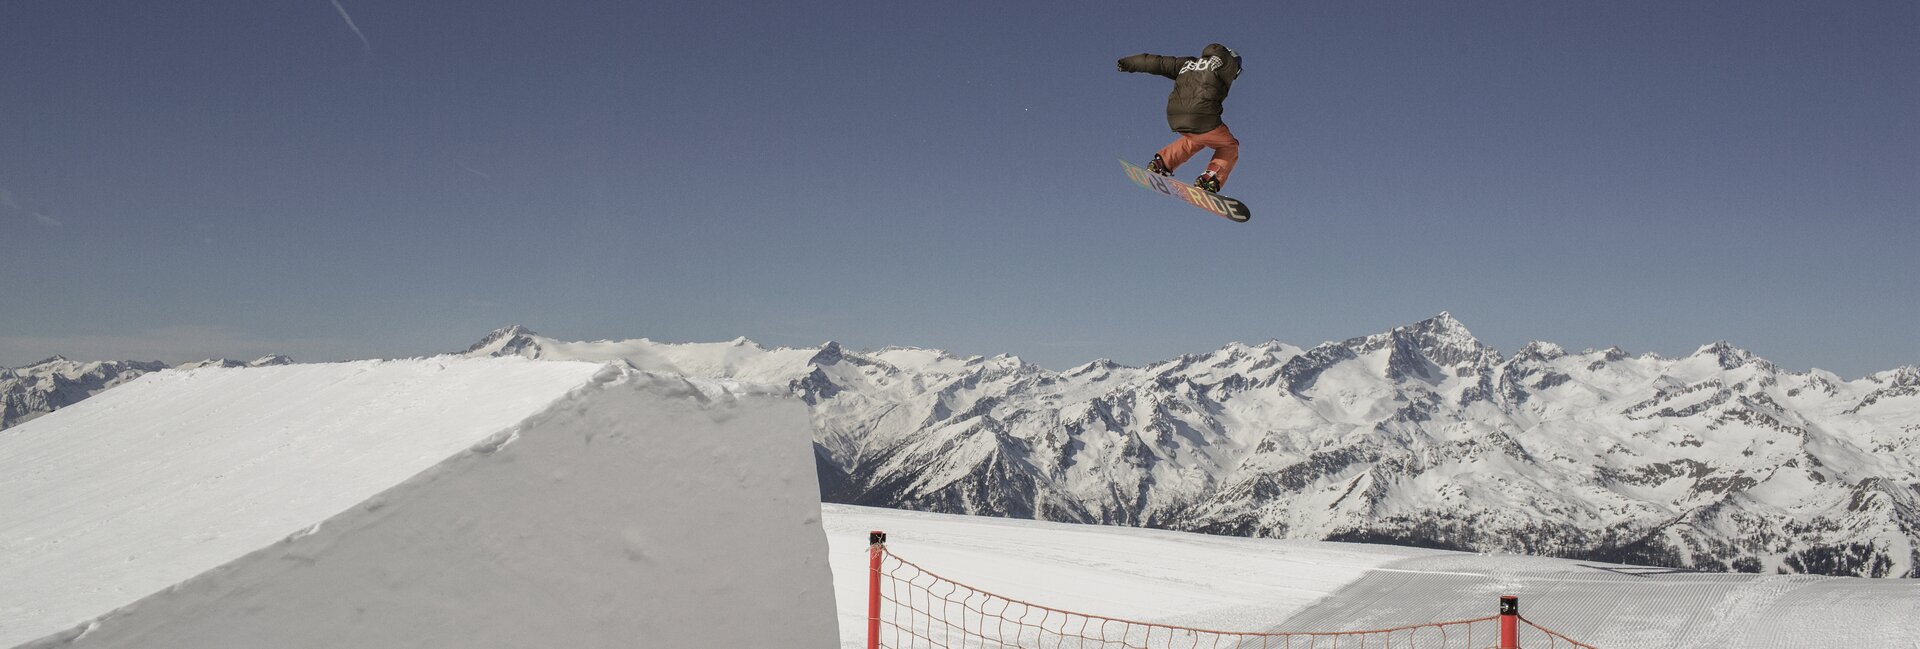 Madonna di Campiglio - Snowboarder in salto
